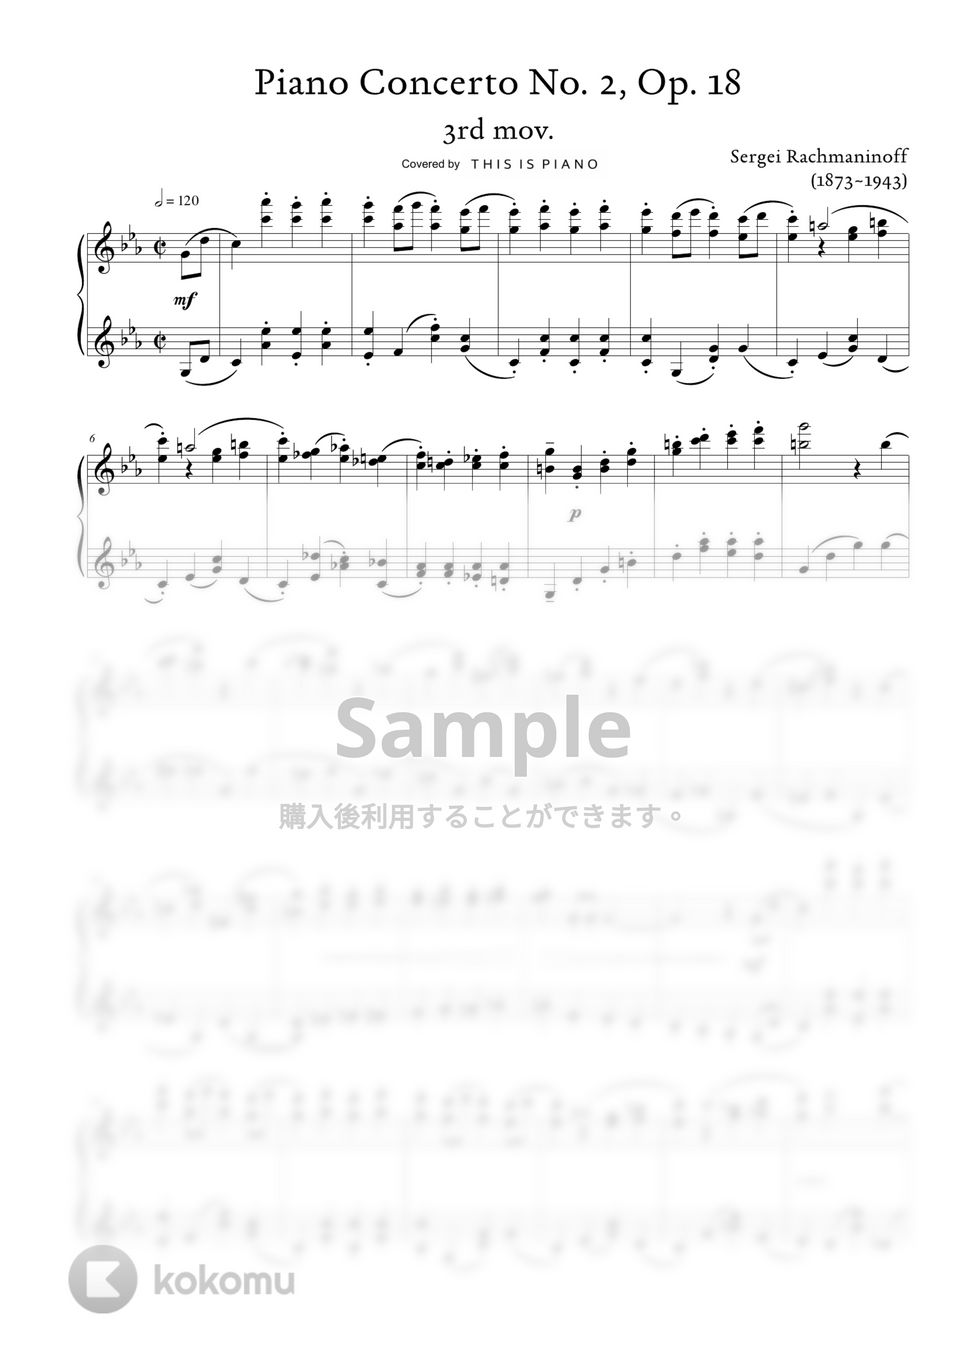 ラフマニノフ - ピアノ協奏曲第2番第3楽章 by THIS IS PIANO